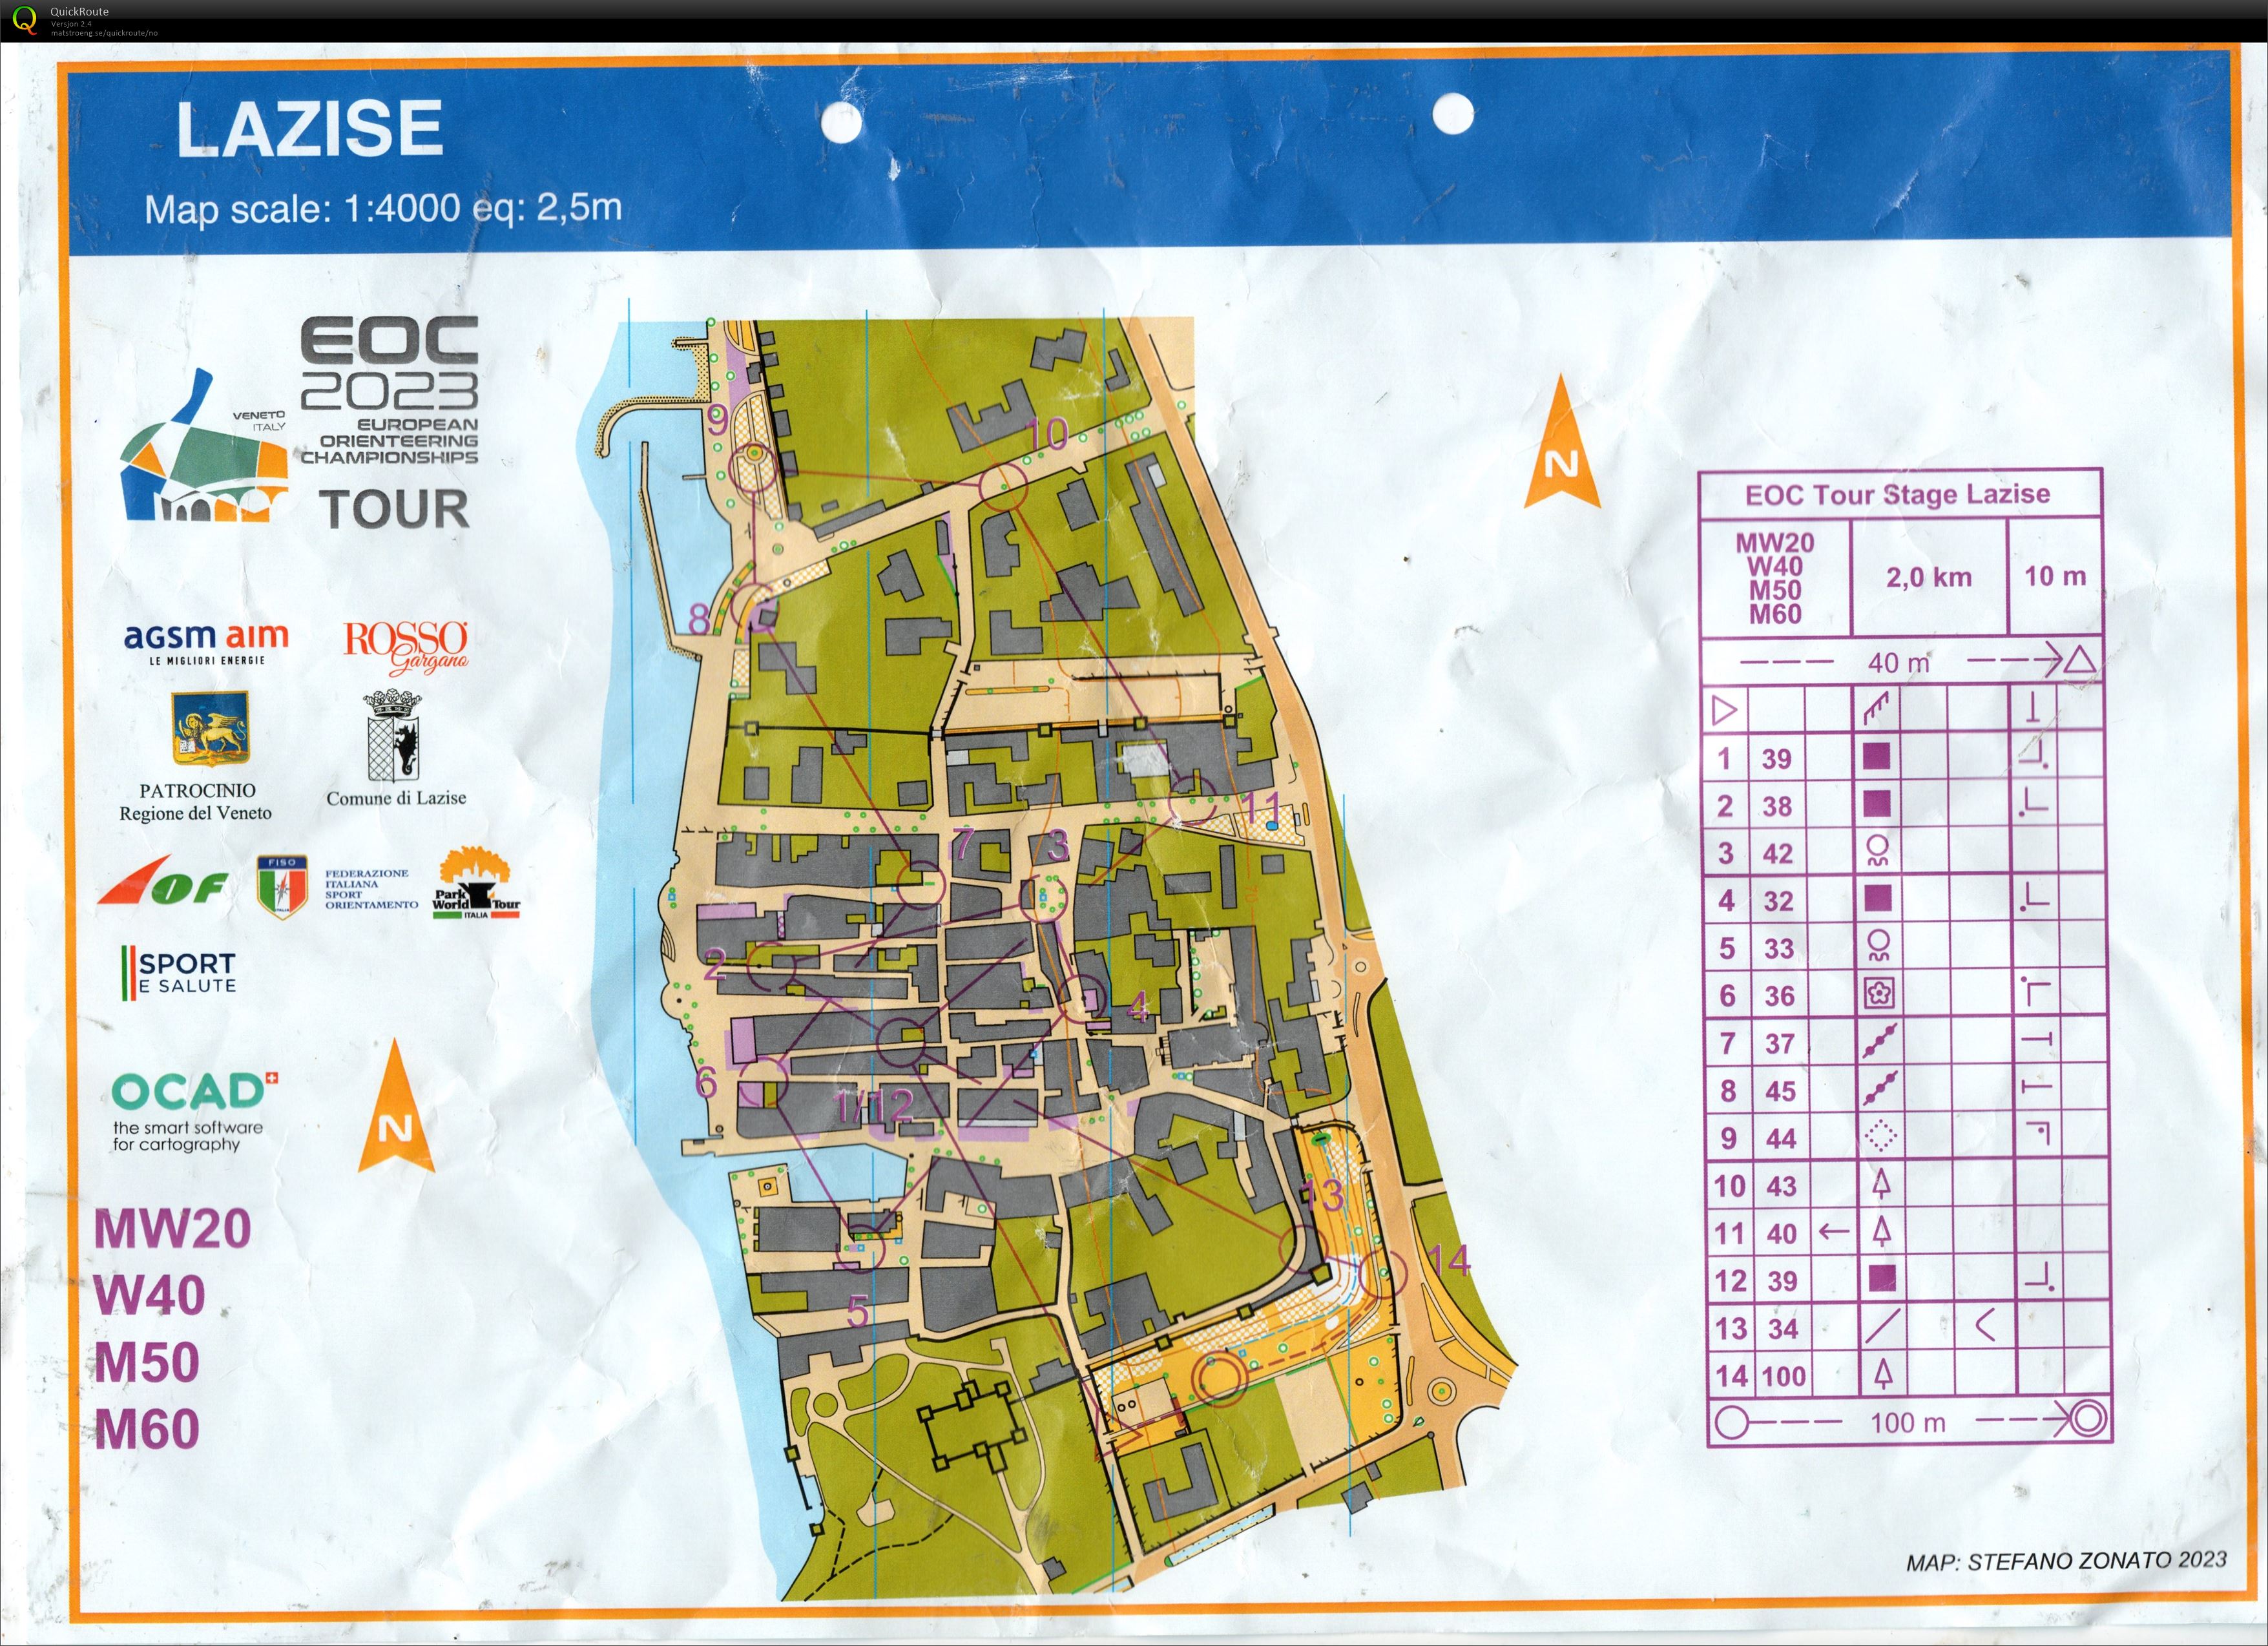 EOC Tour race 2 (03/10/2023)